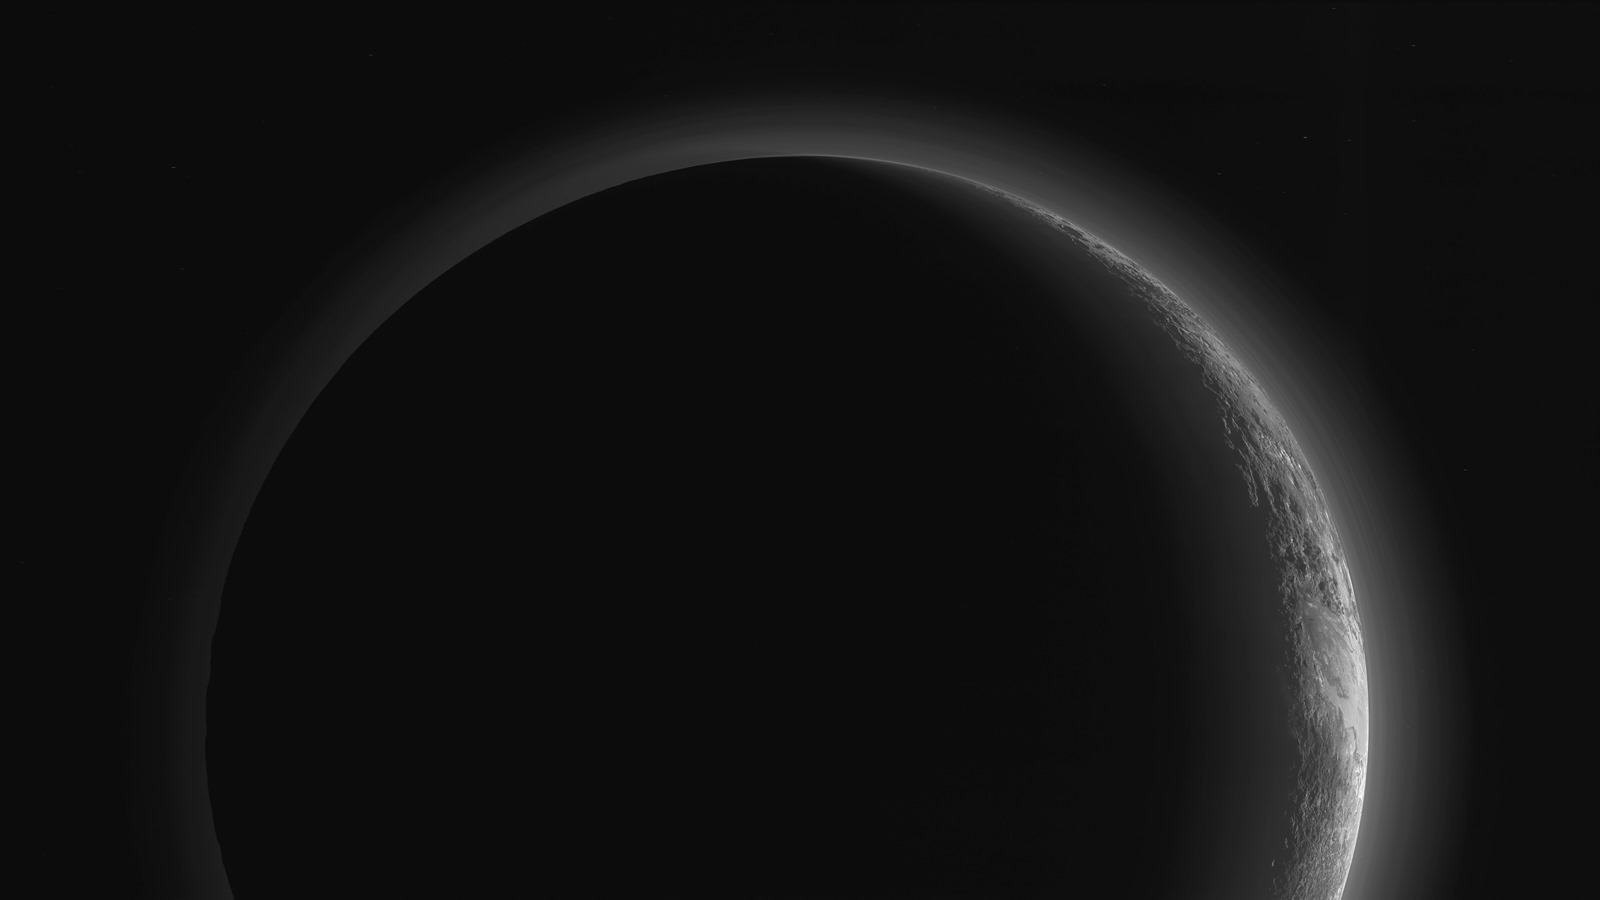 Admirez le brumeux crépuscule de Pluton alors que la sonde New Horizons se prépare pour une prochaine rencontre